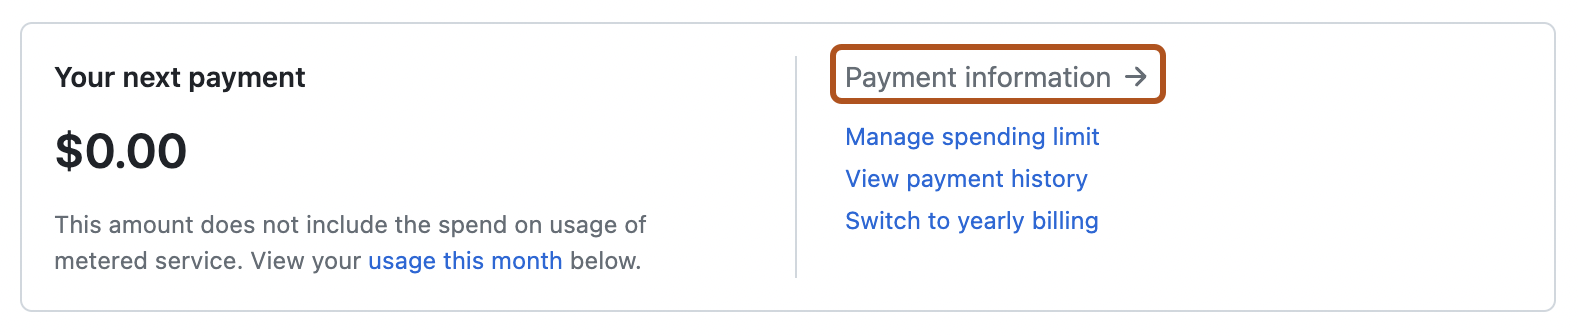 パーソナル アカウントの請求設定ページの概要セクションのスクリーンショット。 [支払い情報] というラベルが付いたリンクがオレンジ色の枠線で強調表示されています。